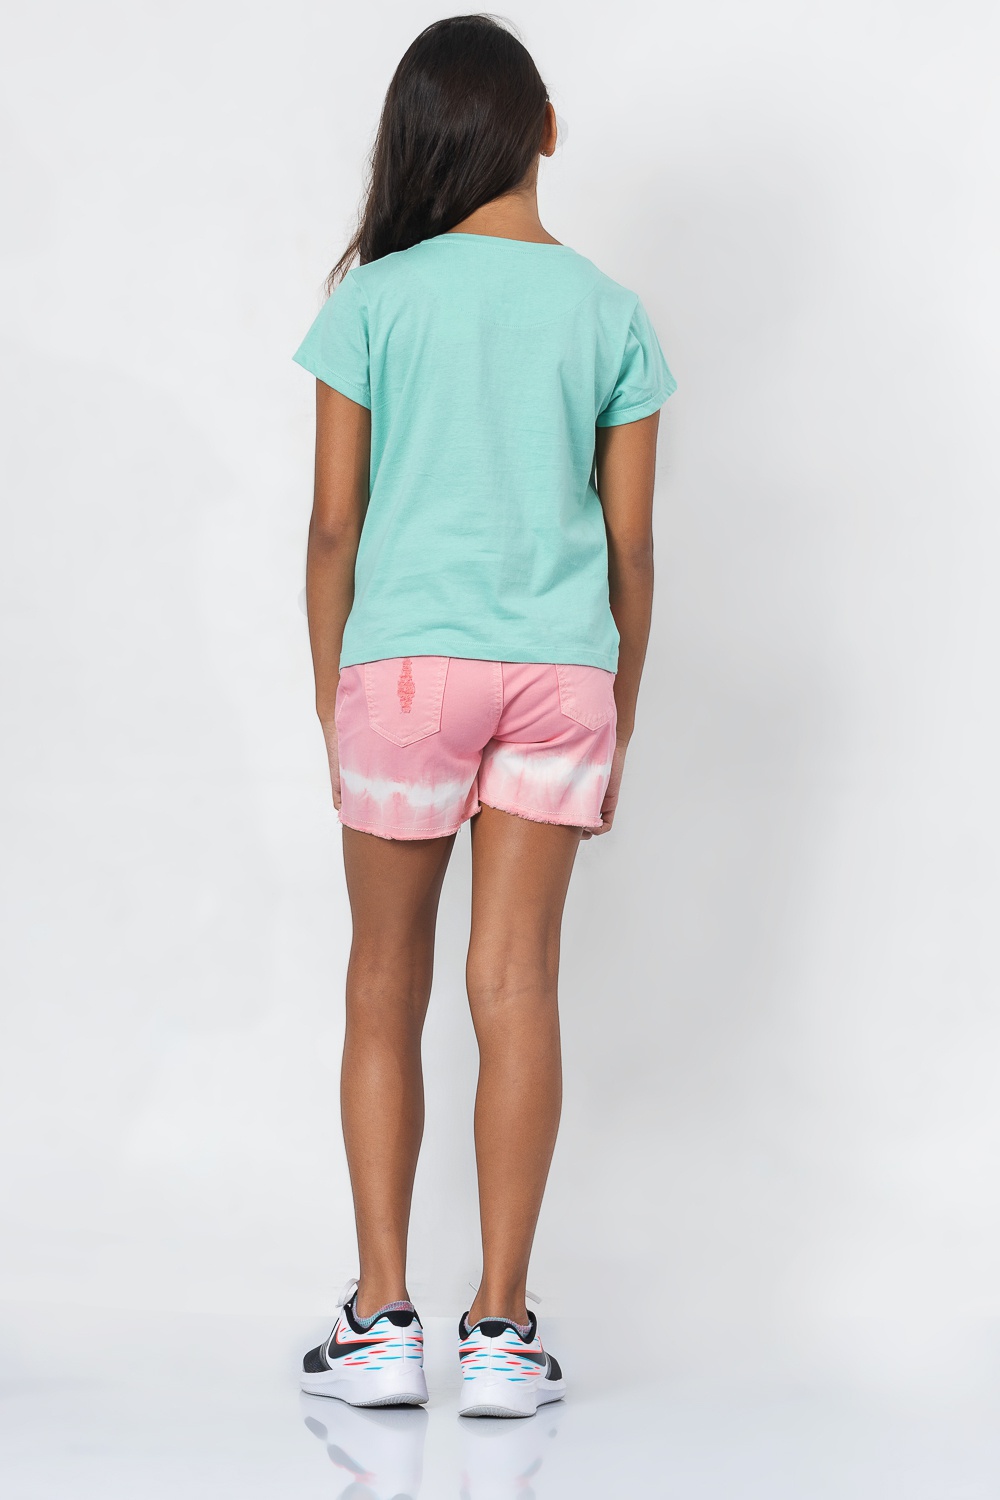 Pinkabelle Girls Shorts